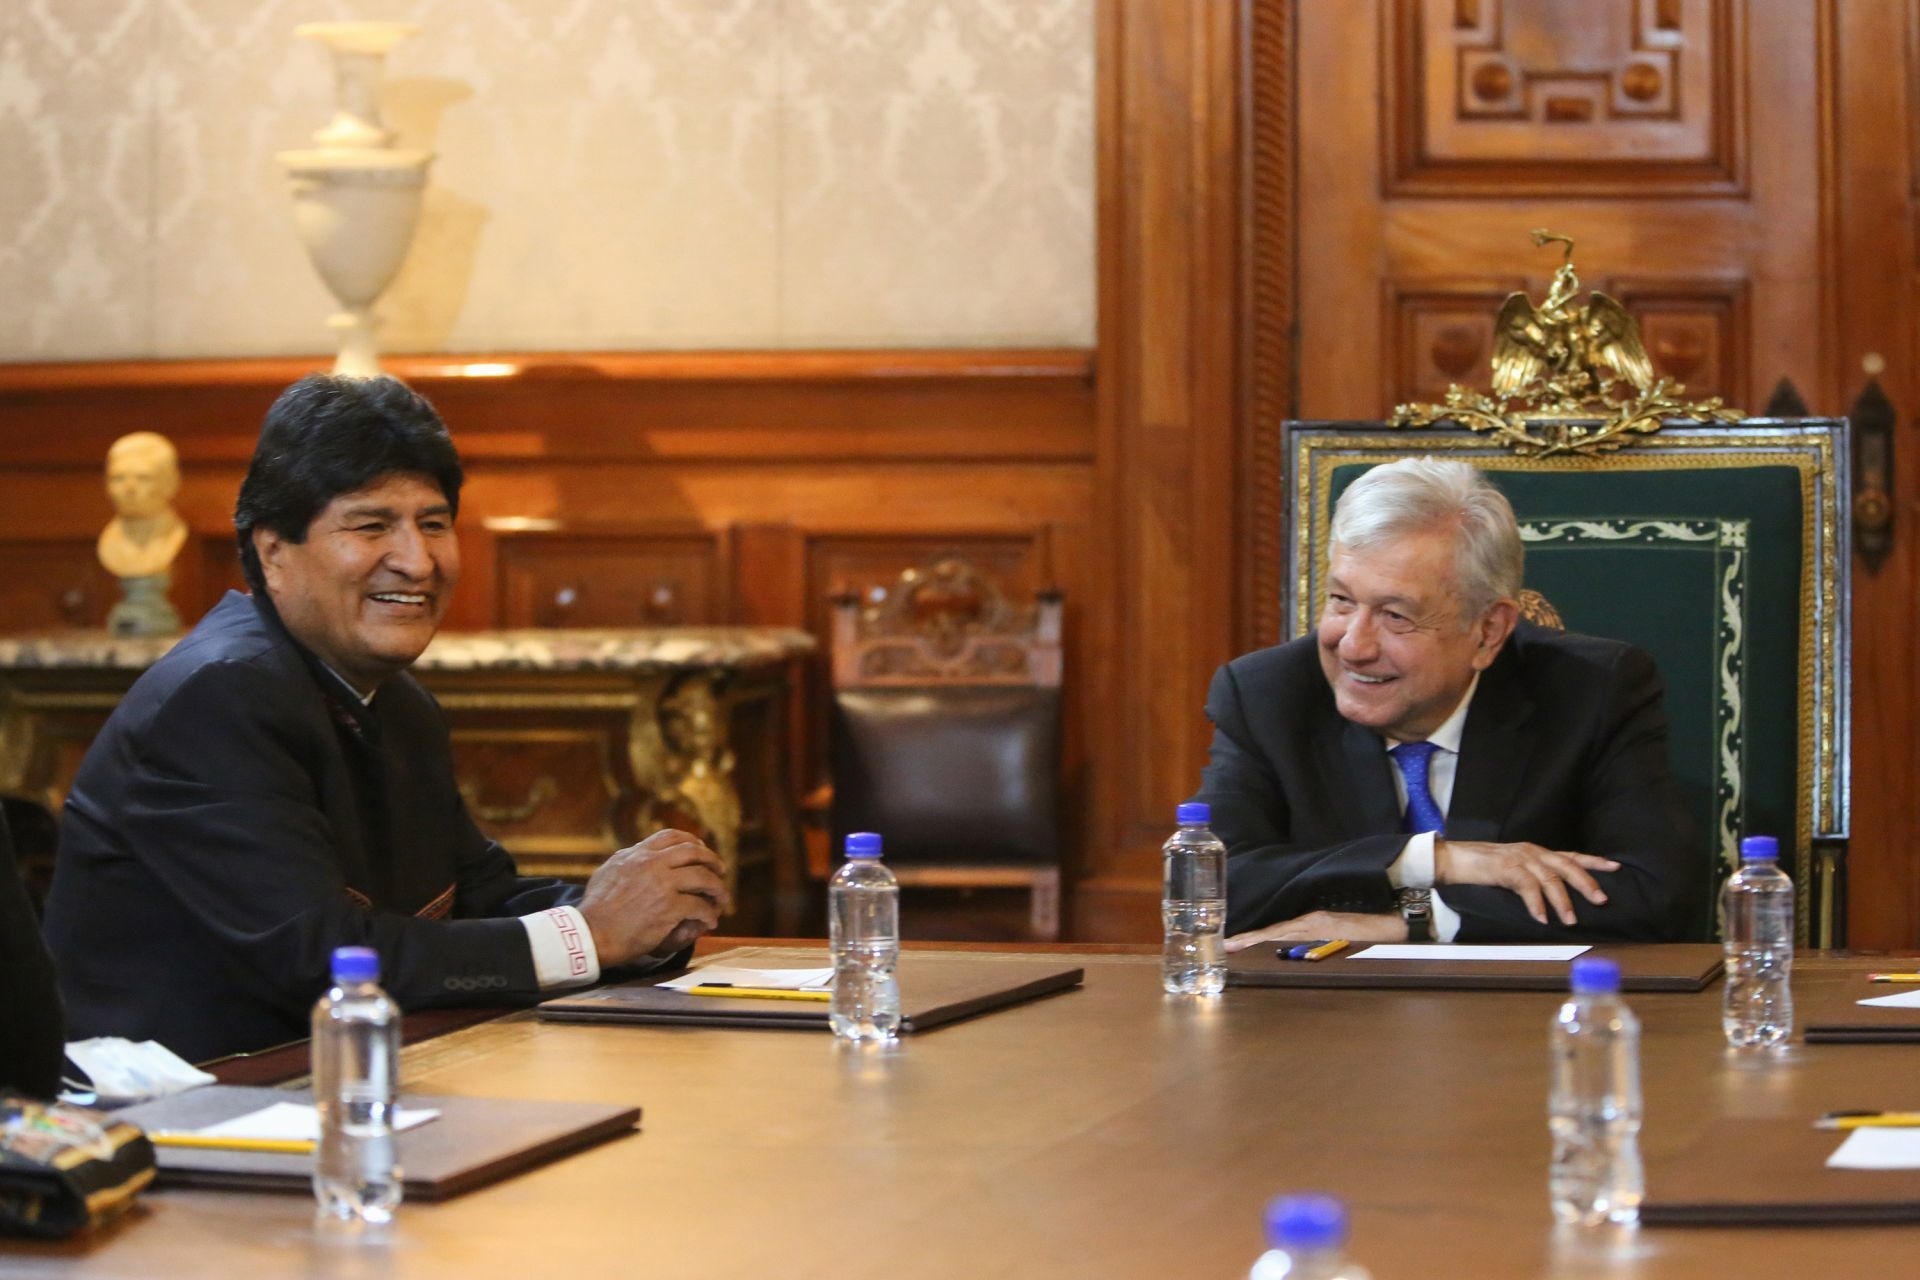 El presidente de México, Andrés Manuel López Obrador, se reunió con Evo Morales, expresidente de Bolivia, quien se encuentra en el país (Cuartoscuro)